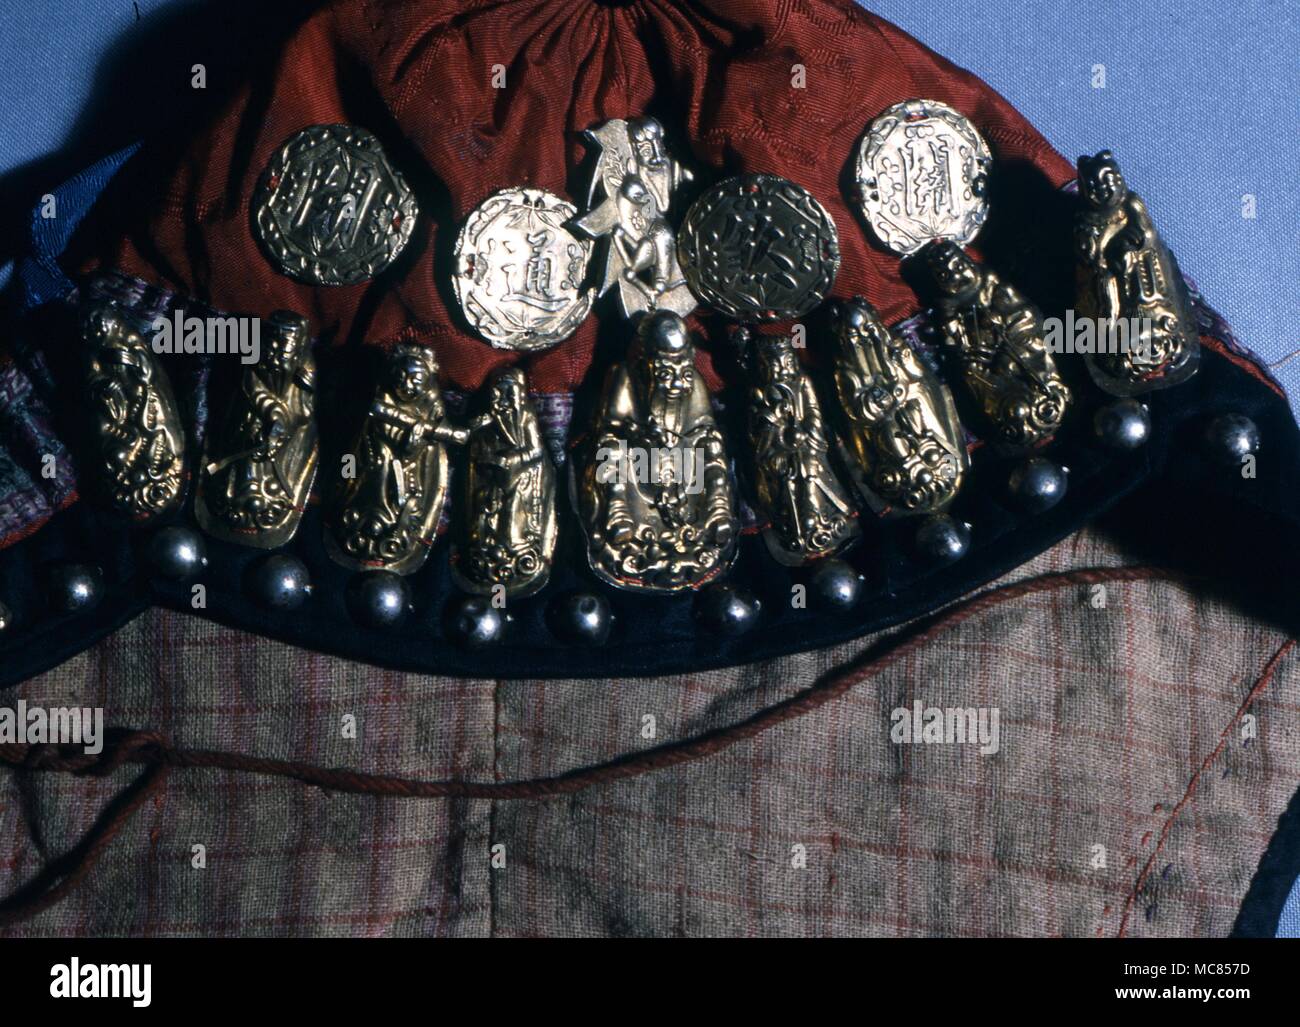 Imágenes de metal crudo amuleto de los Ocho Inmortales chinos y amuletic monedas, fijada en la parte delantera de un niño en el sombrero, desde el norte de China. Ahora en una colección privada en Hong Kong. Los amuletos e inmortales están utilizadas para protección Foto de stock